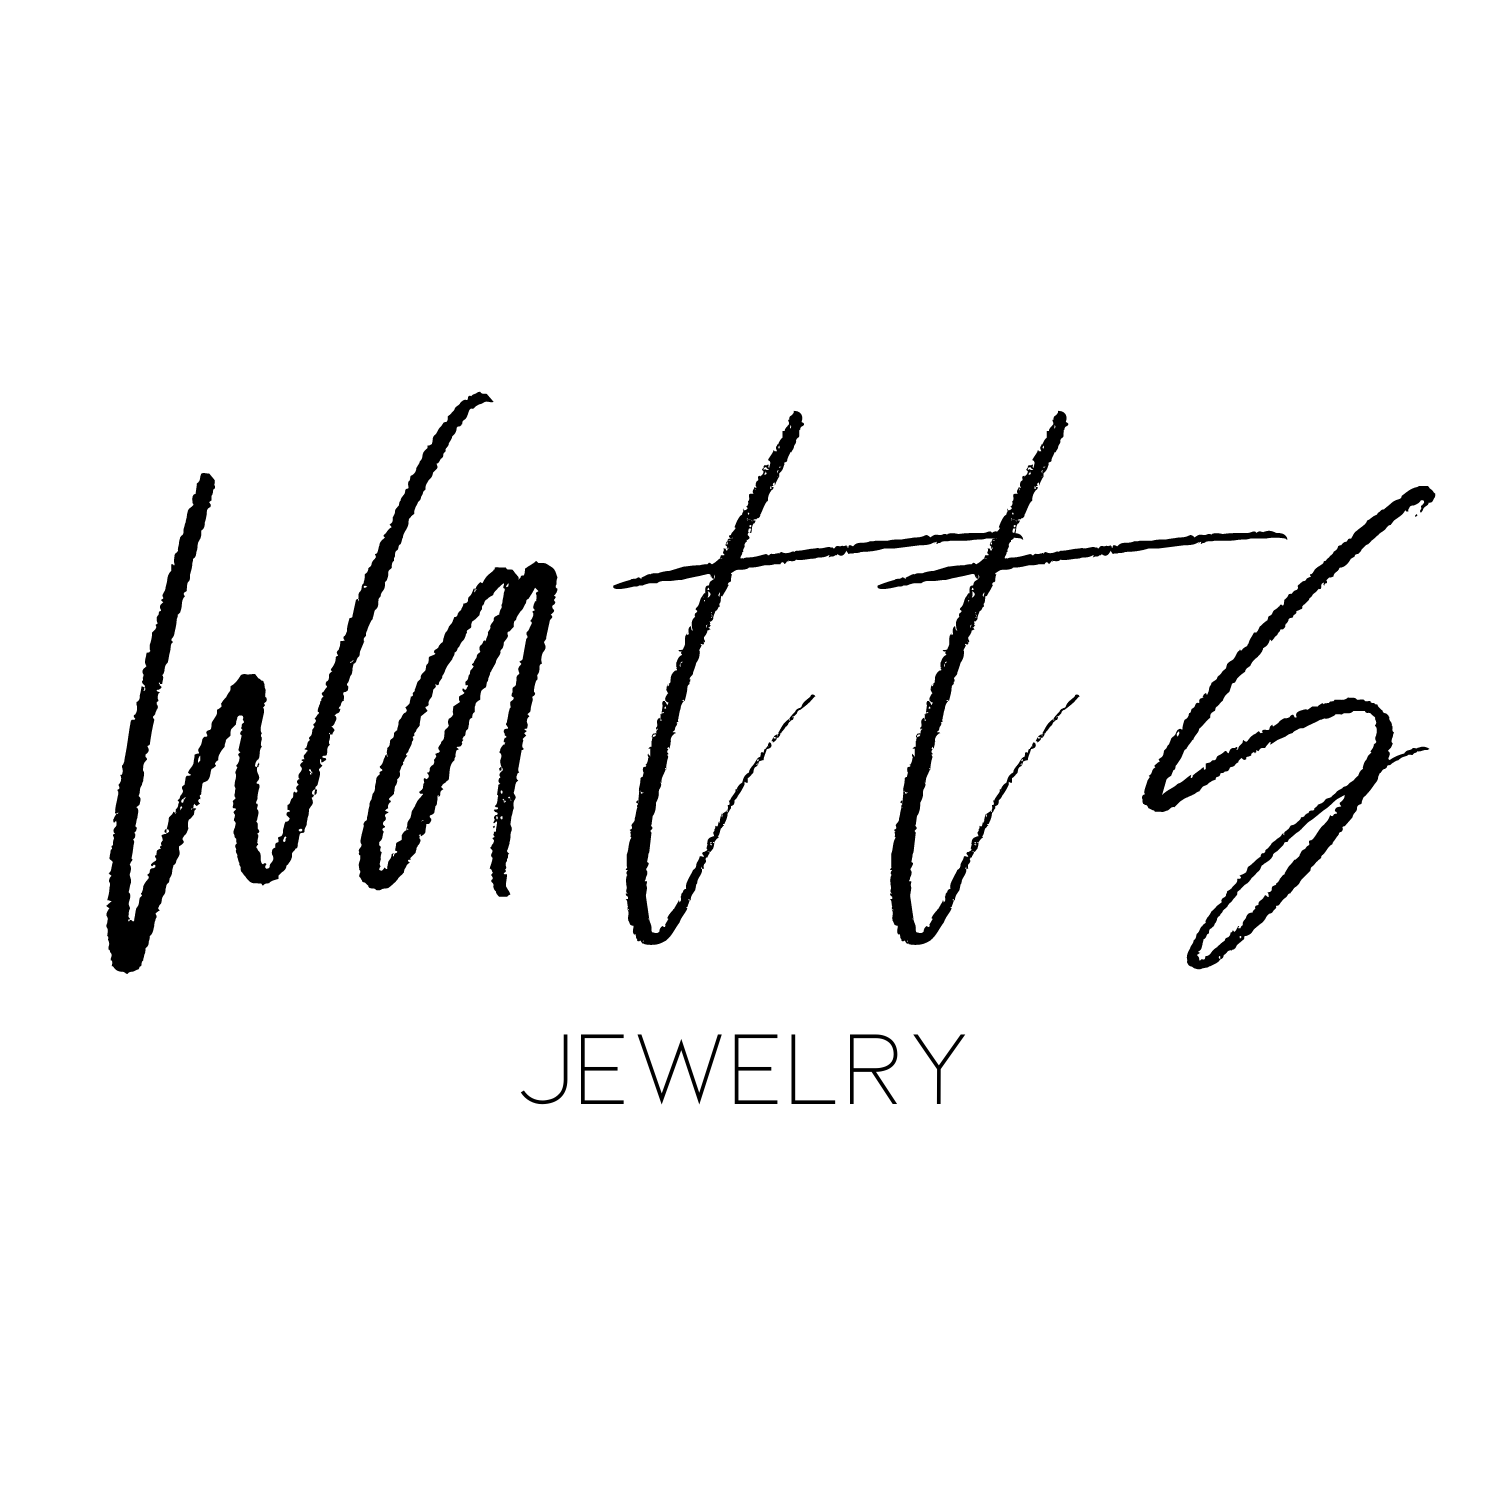 Watts Jewelry